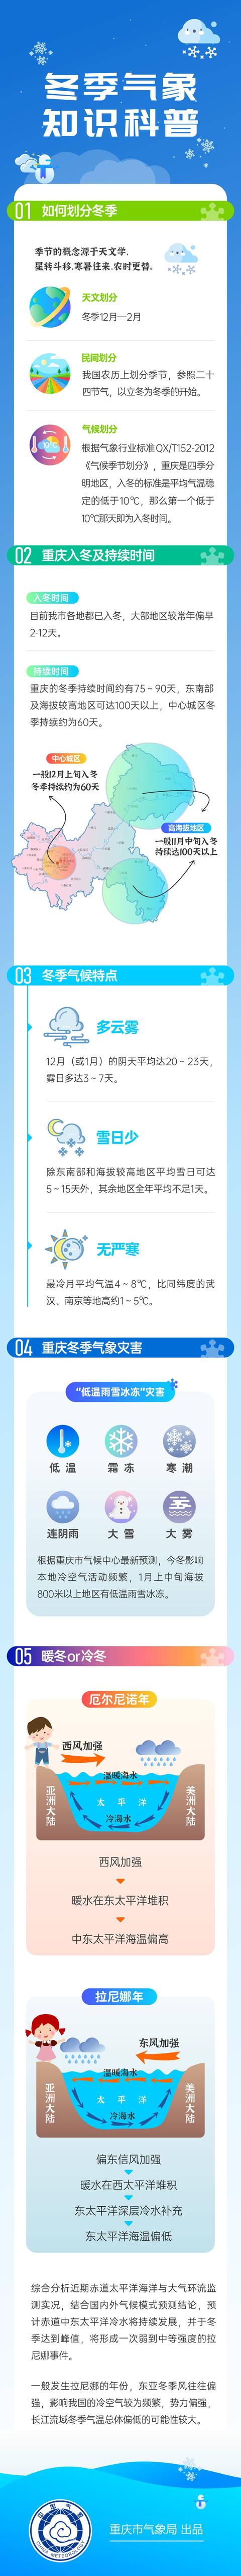 重庆最冷是几月份,重庆一年最冷是哪个月(4)